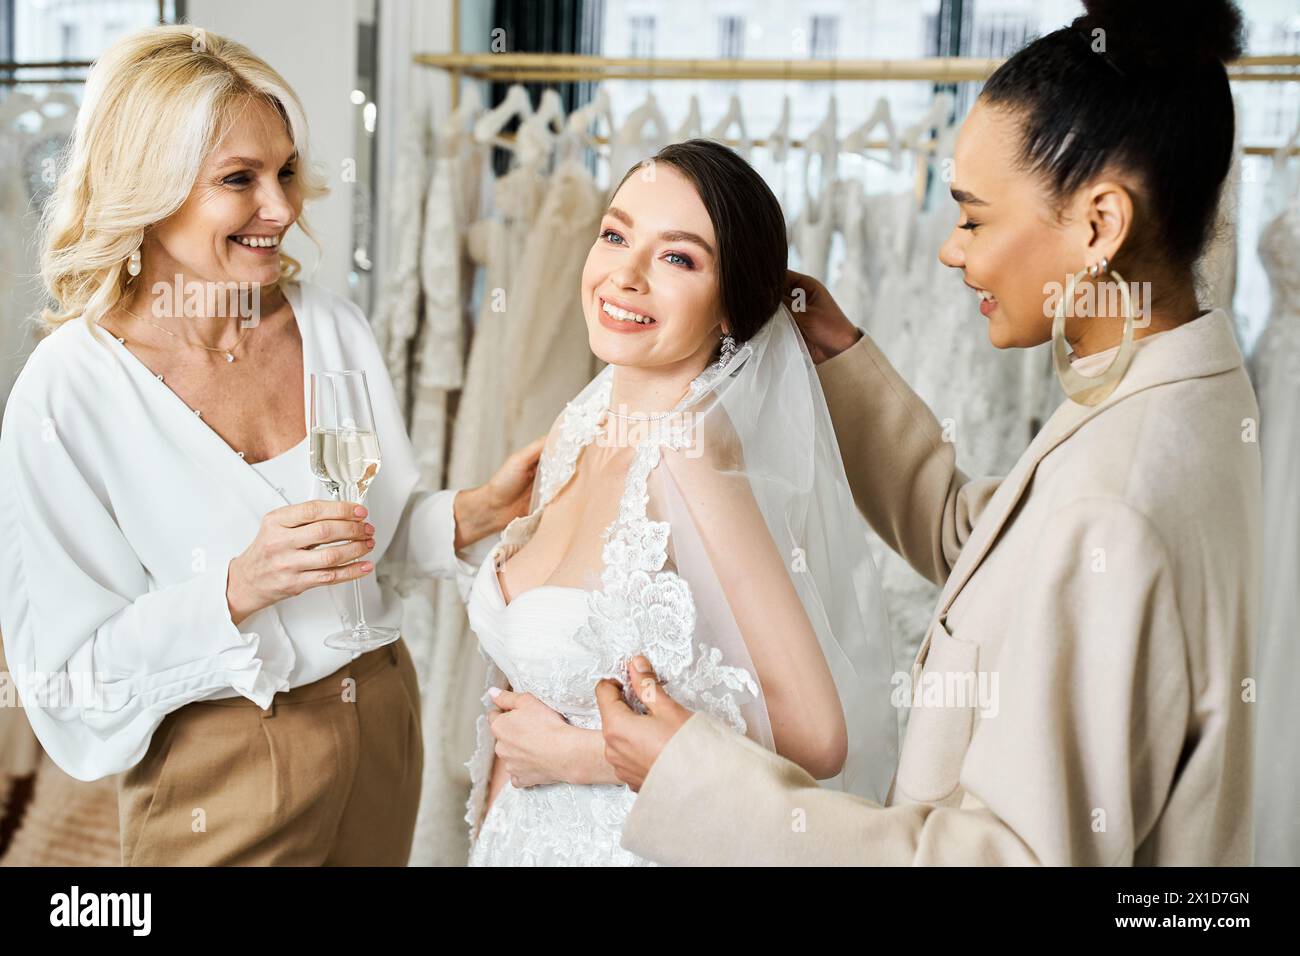 Eine junge Braut, ihre Mutter und die Brautjungfer stehen anmutig in verschiedenen Kleidern in einem Brautsalon. Stockfoto